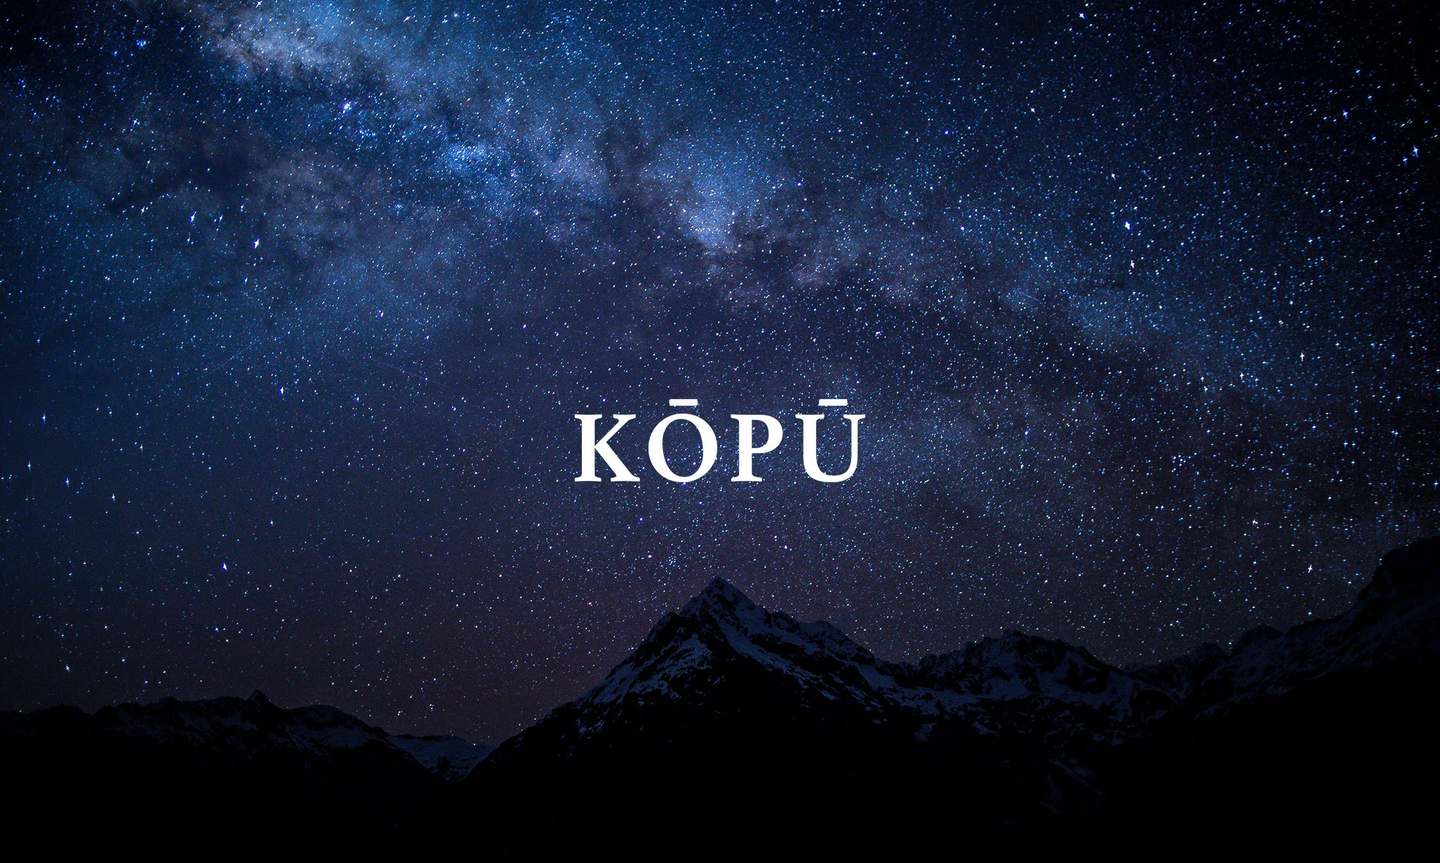 Kōpū